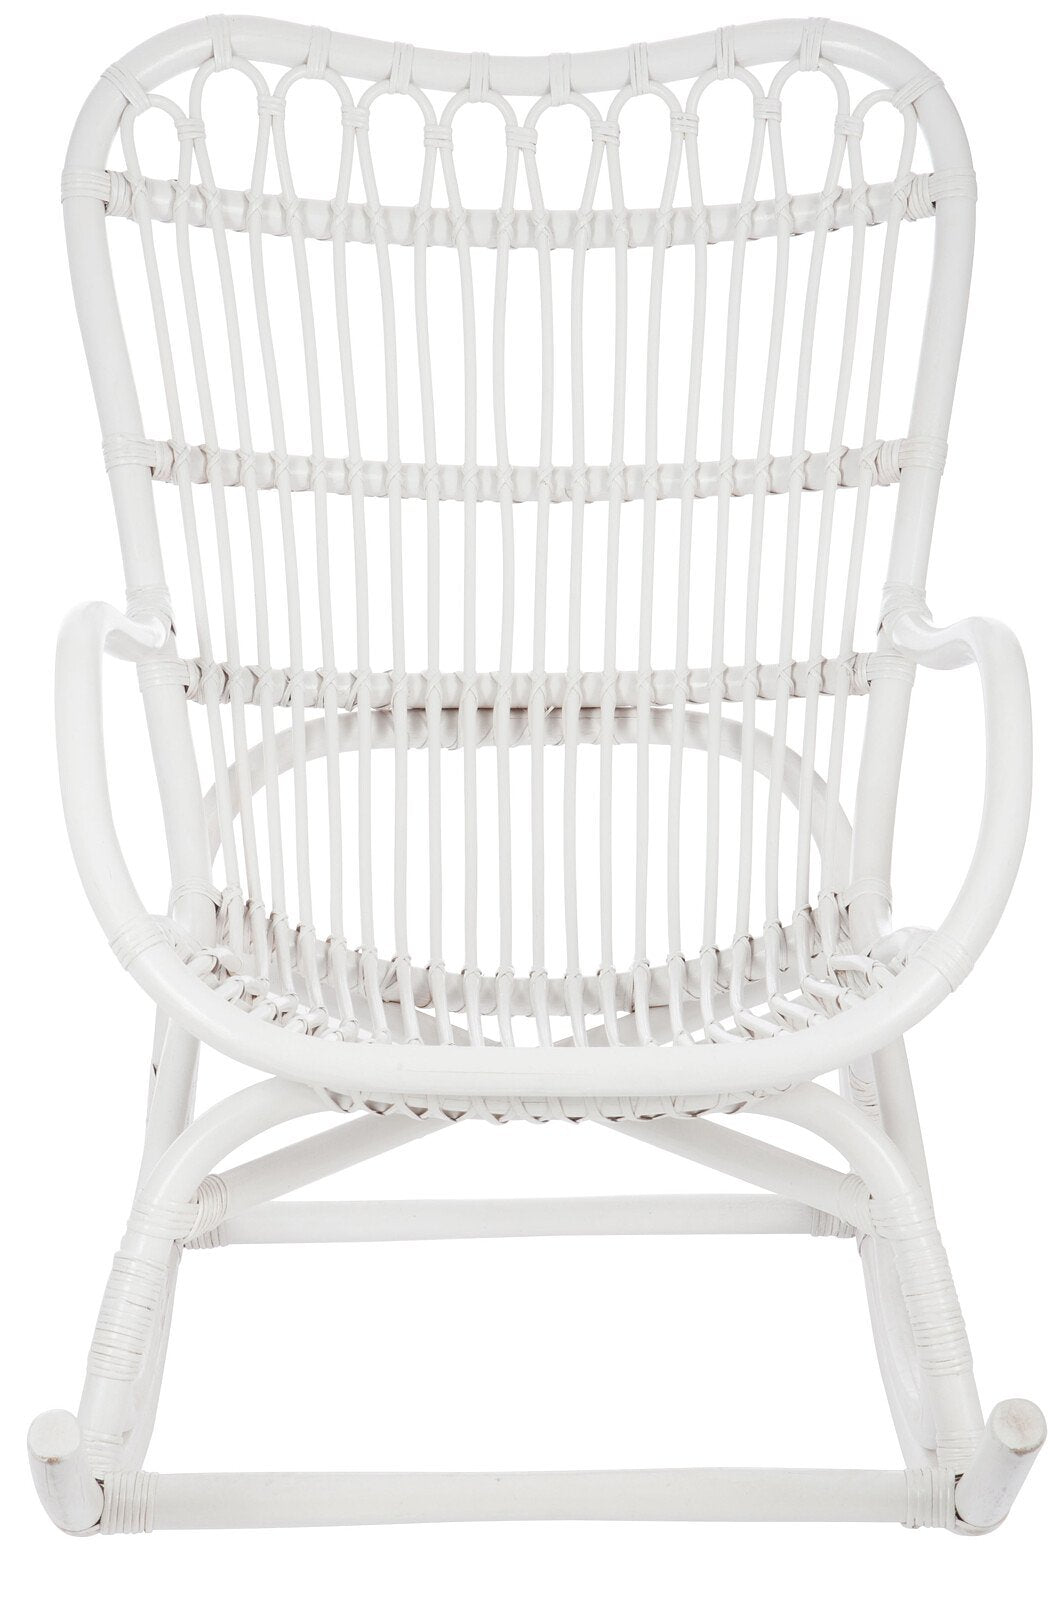 J-Line schommelstoel - rotan - wit